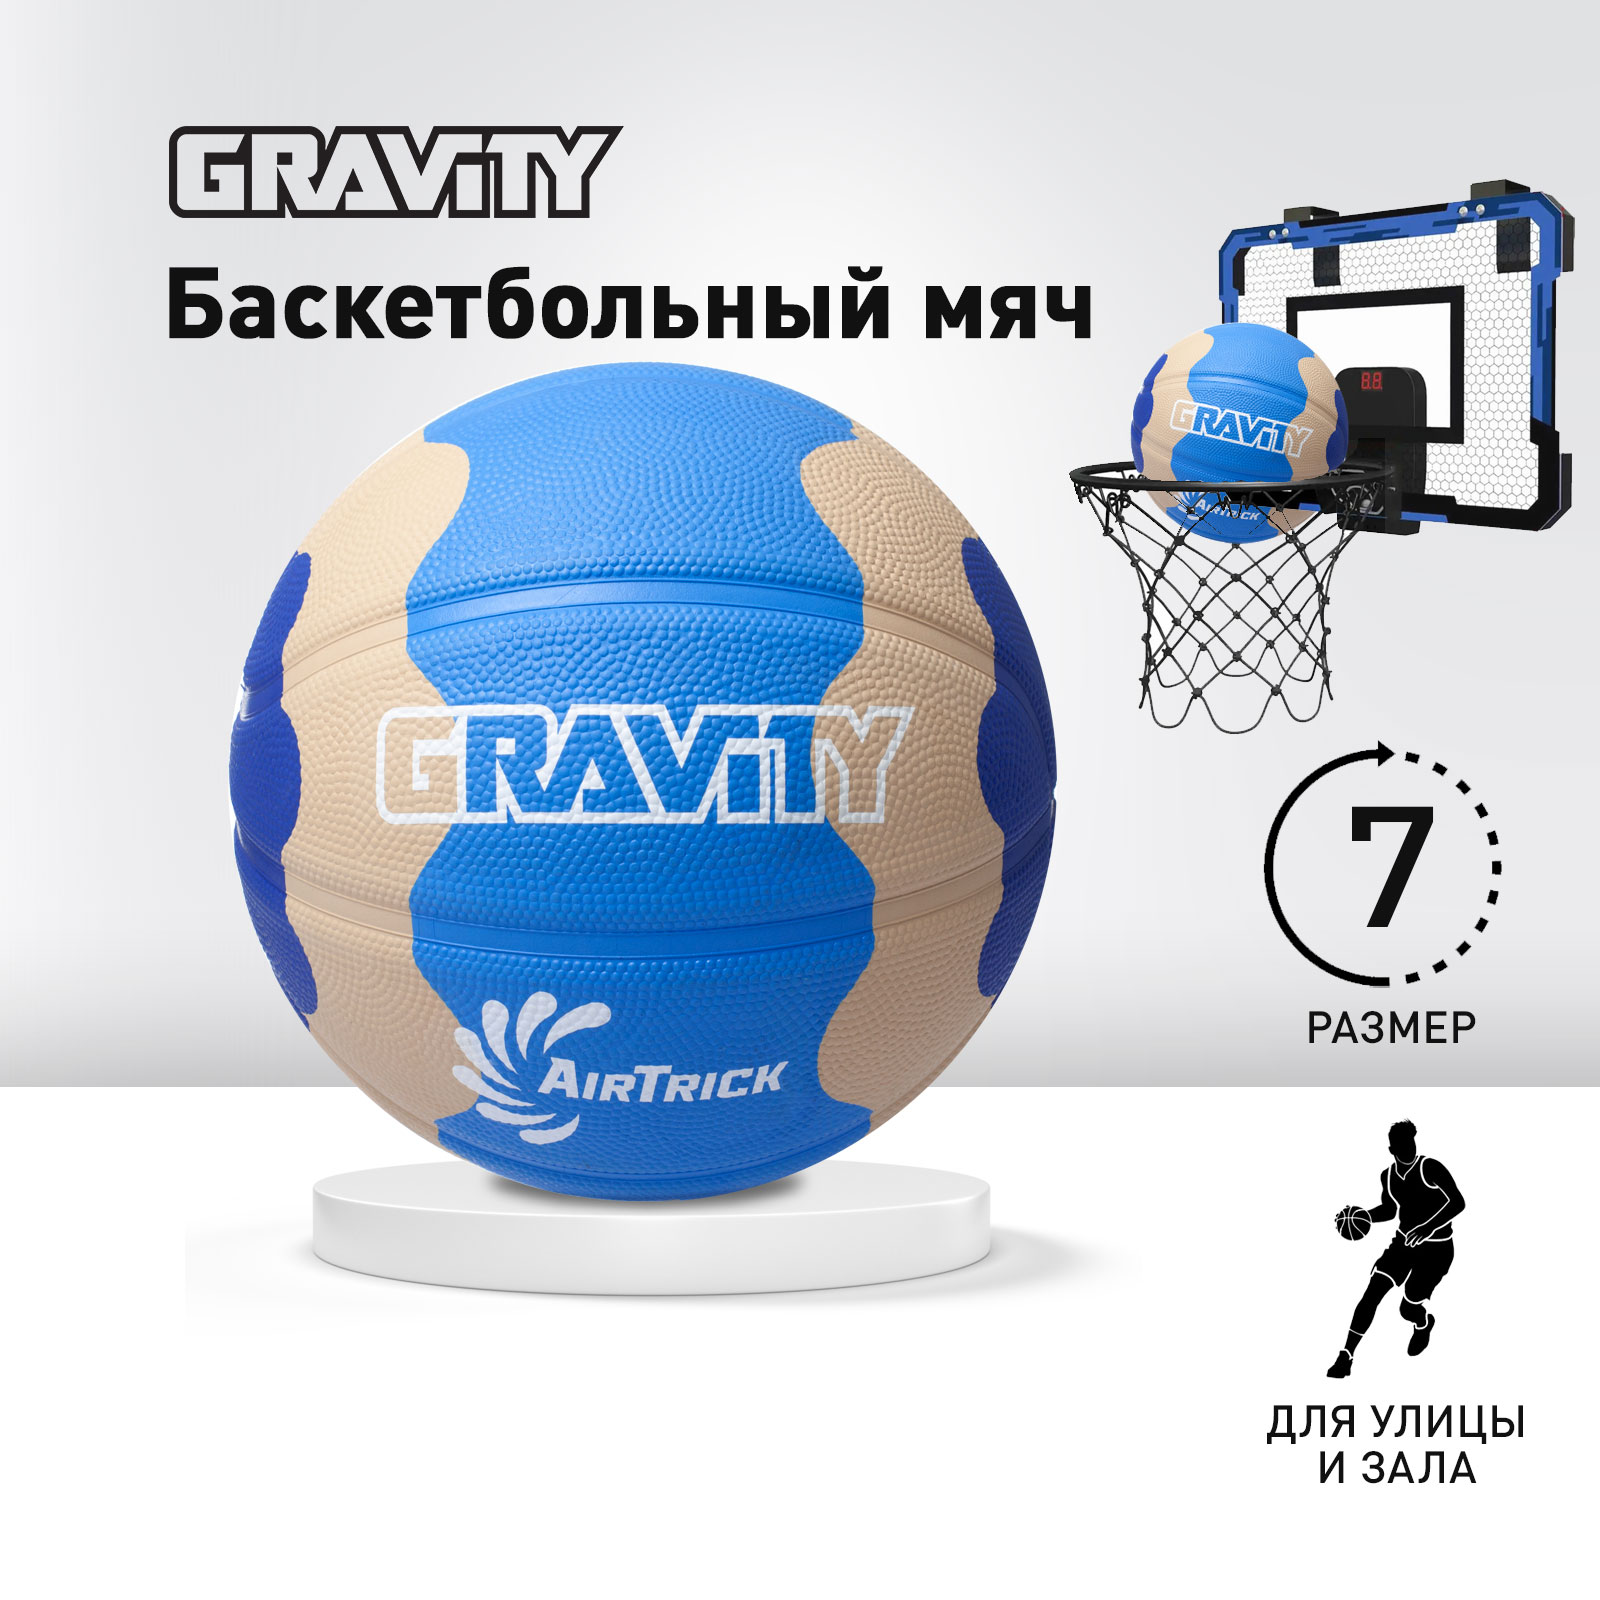 Баскетбольный мяч Gravity, вспененная резина, синий серый голубой, размер 7